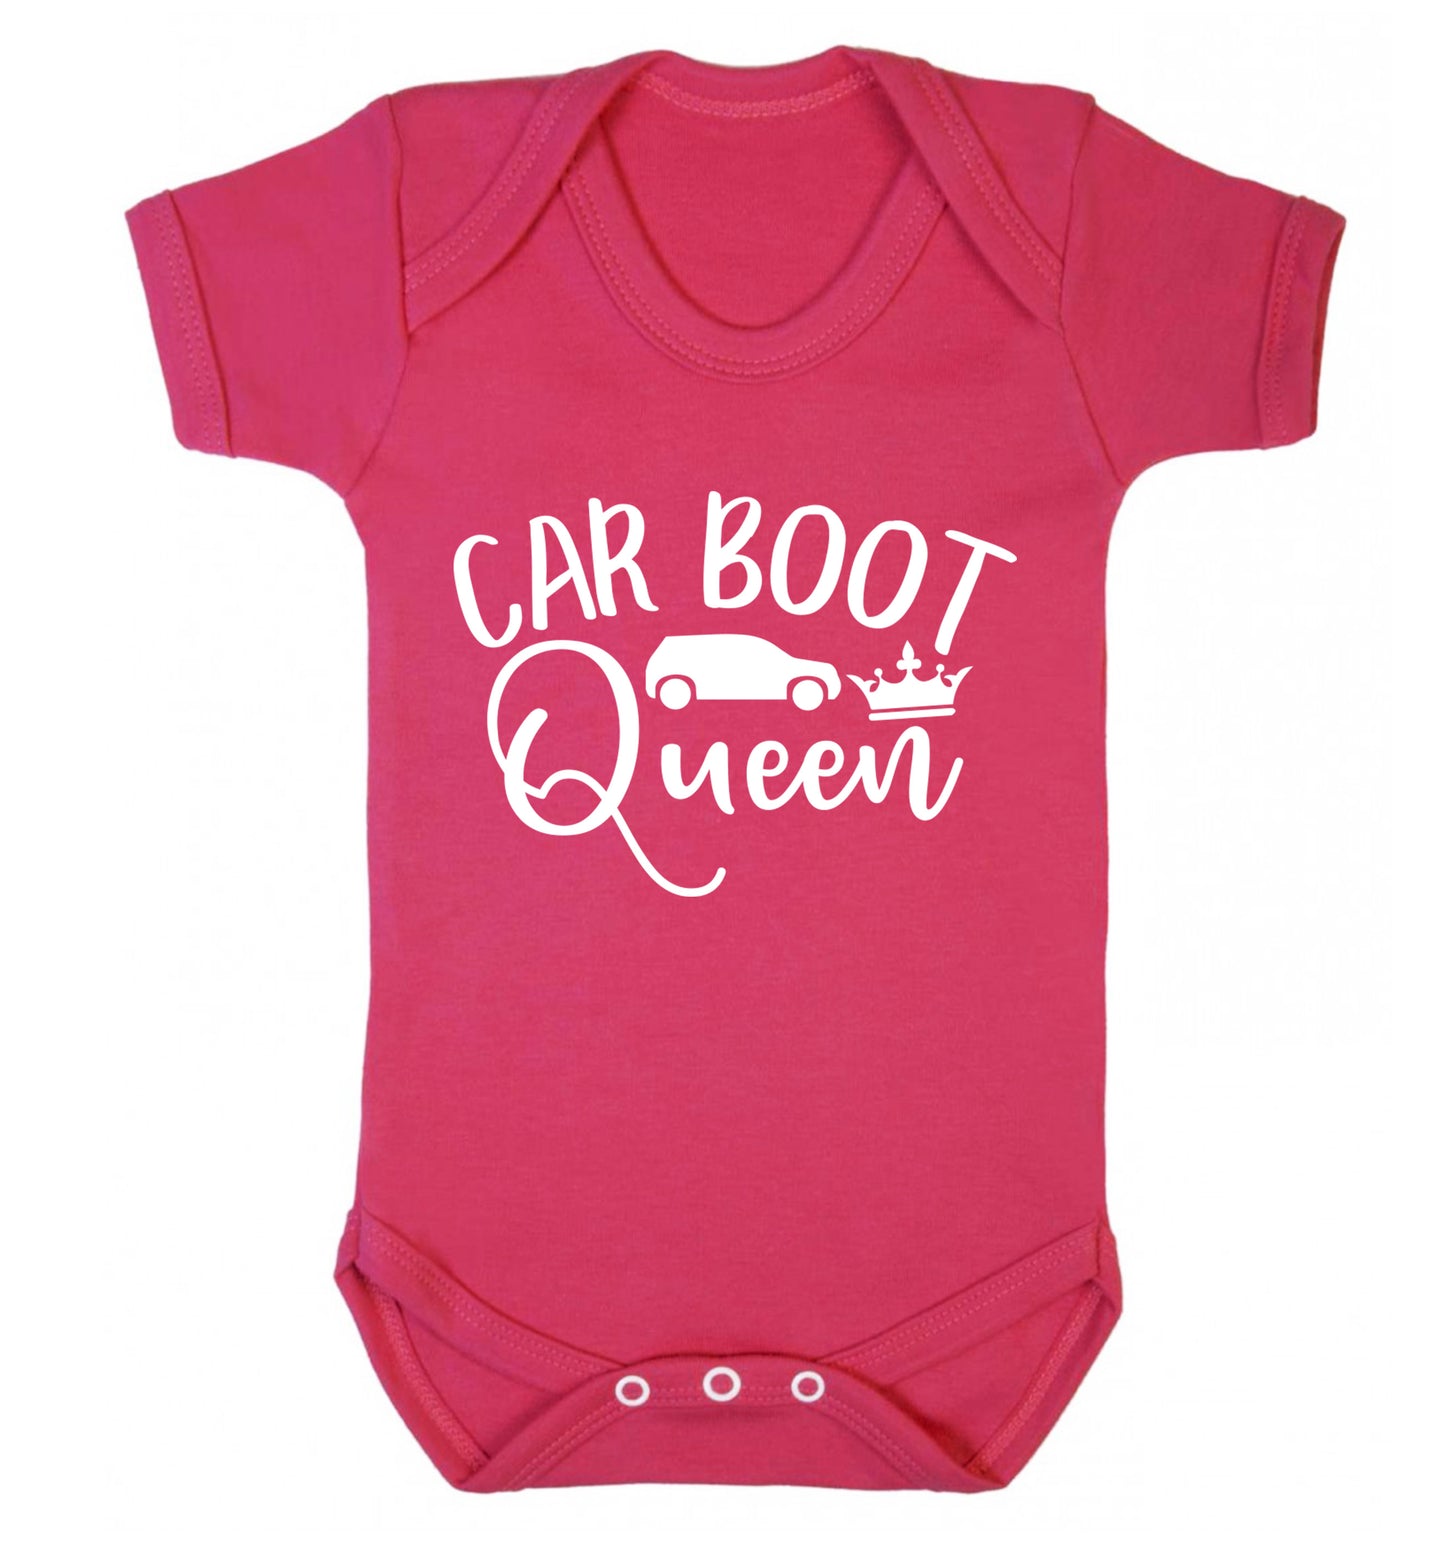 Carboot Queen Baby Vest dark pink 18-24 months